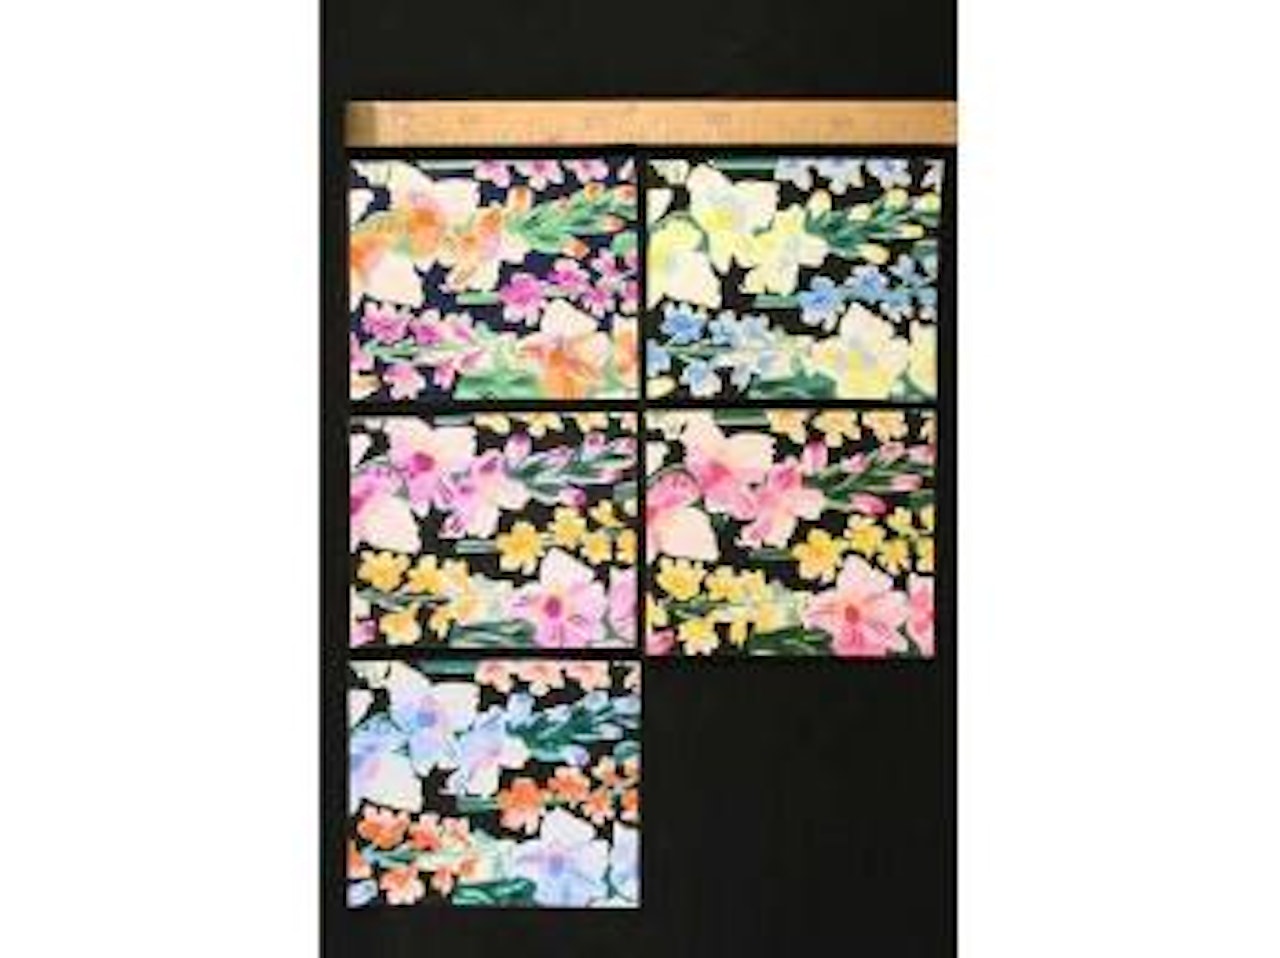 Fleurs polychromes sur fond noir by Raoul Dufy